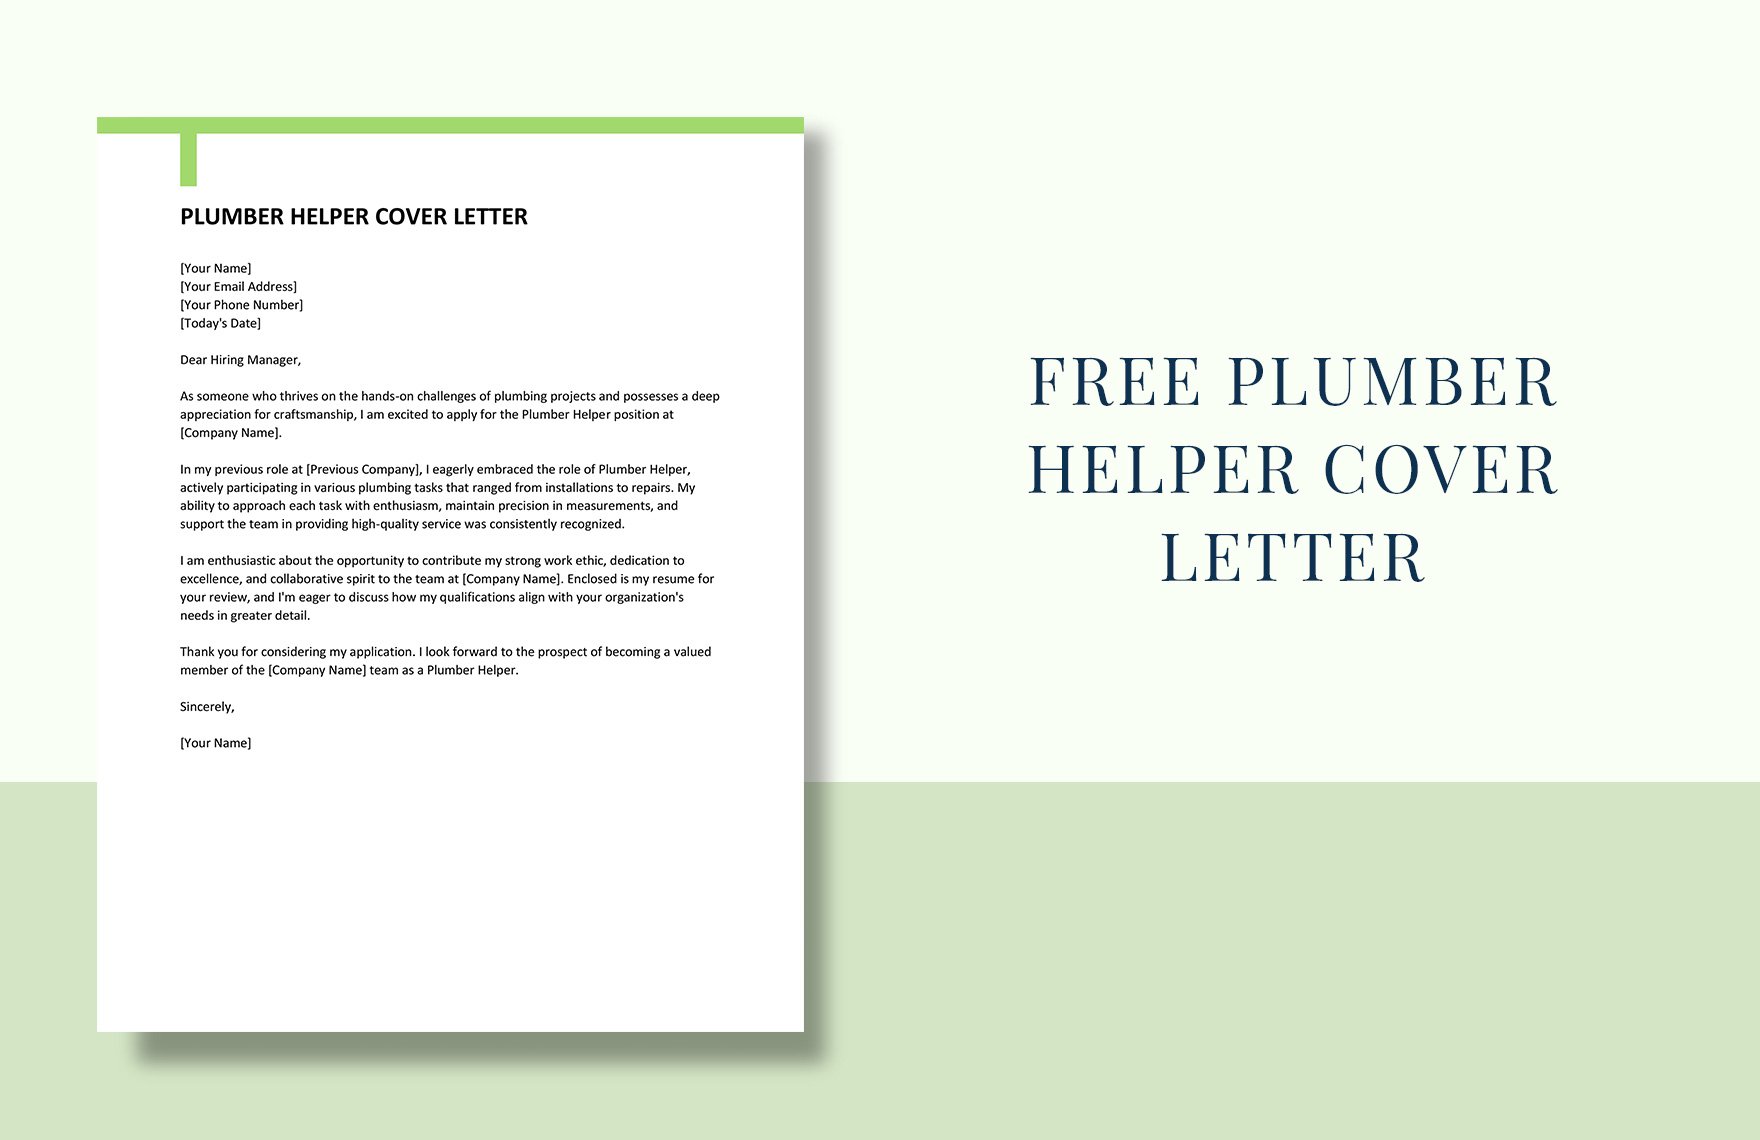 Plumber Helper Cover Letter in Word, Google Docs